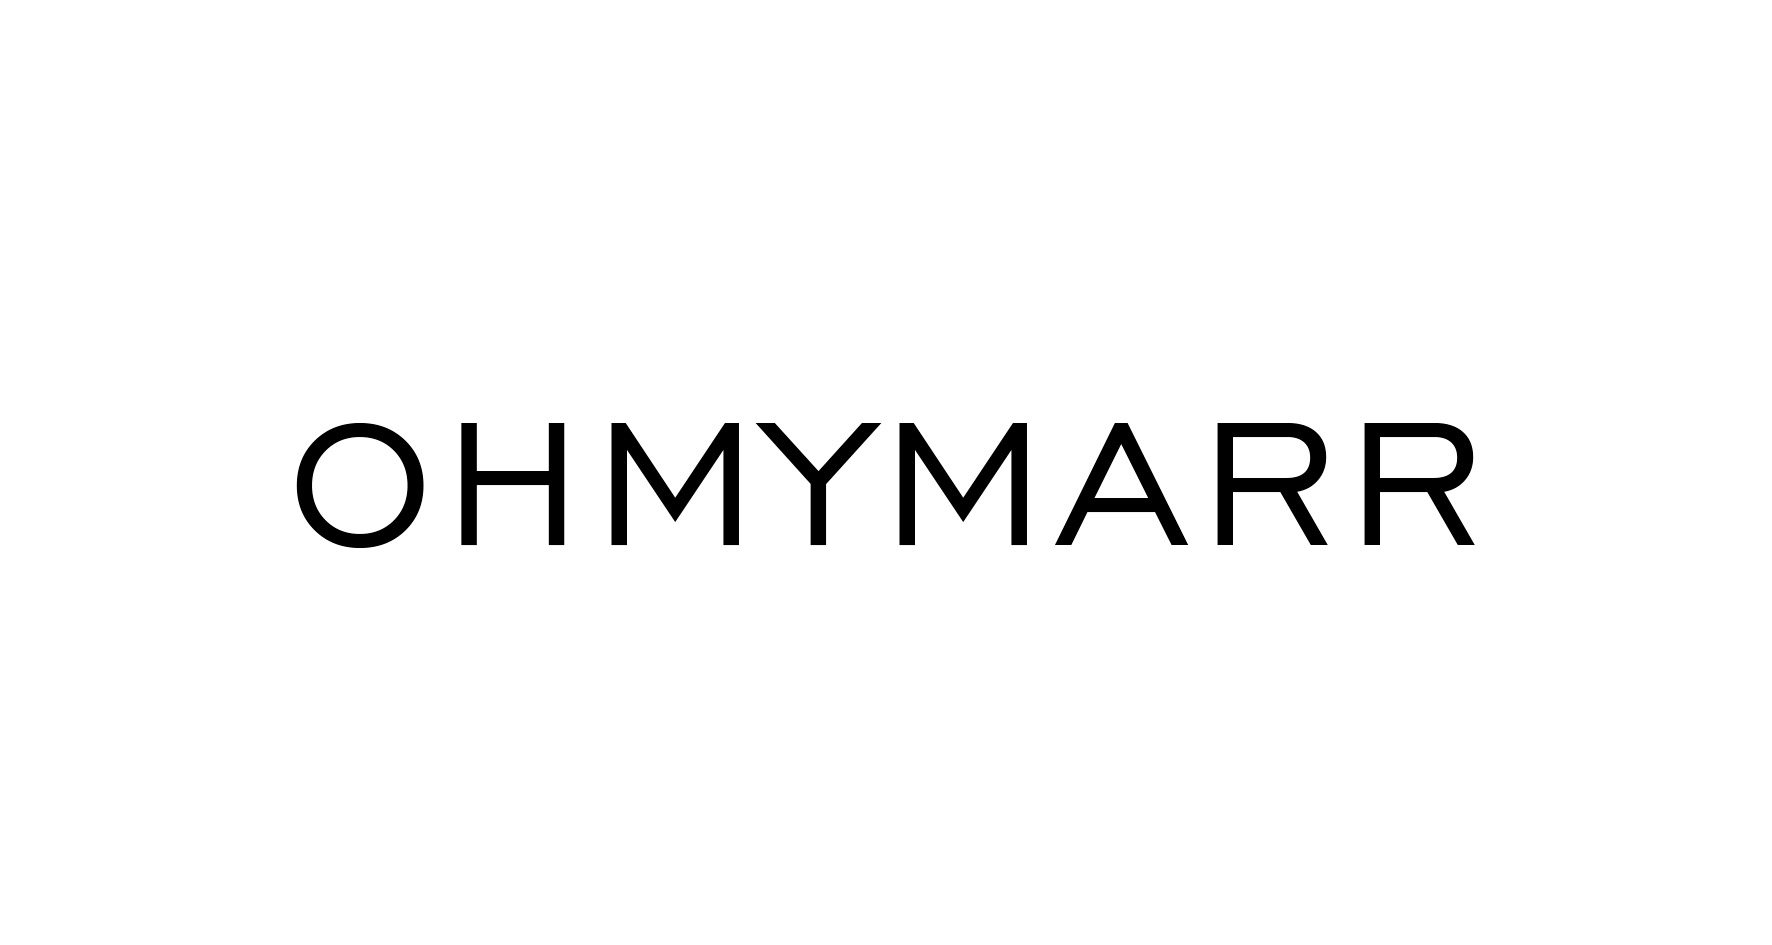 OHMYMARR Одежда и аксессуары, купить онлайн, OHMYMARR в универмаге Bolshoy